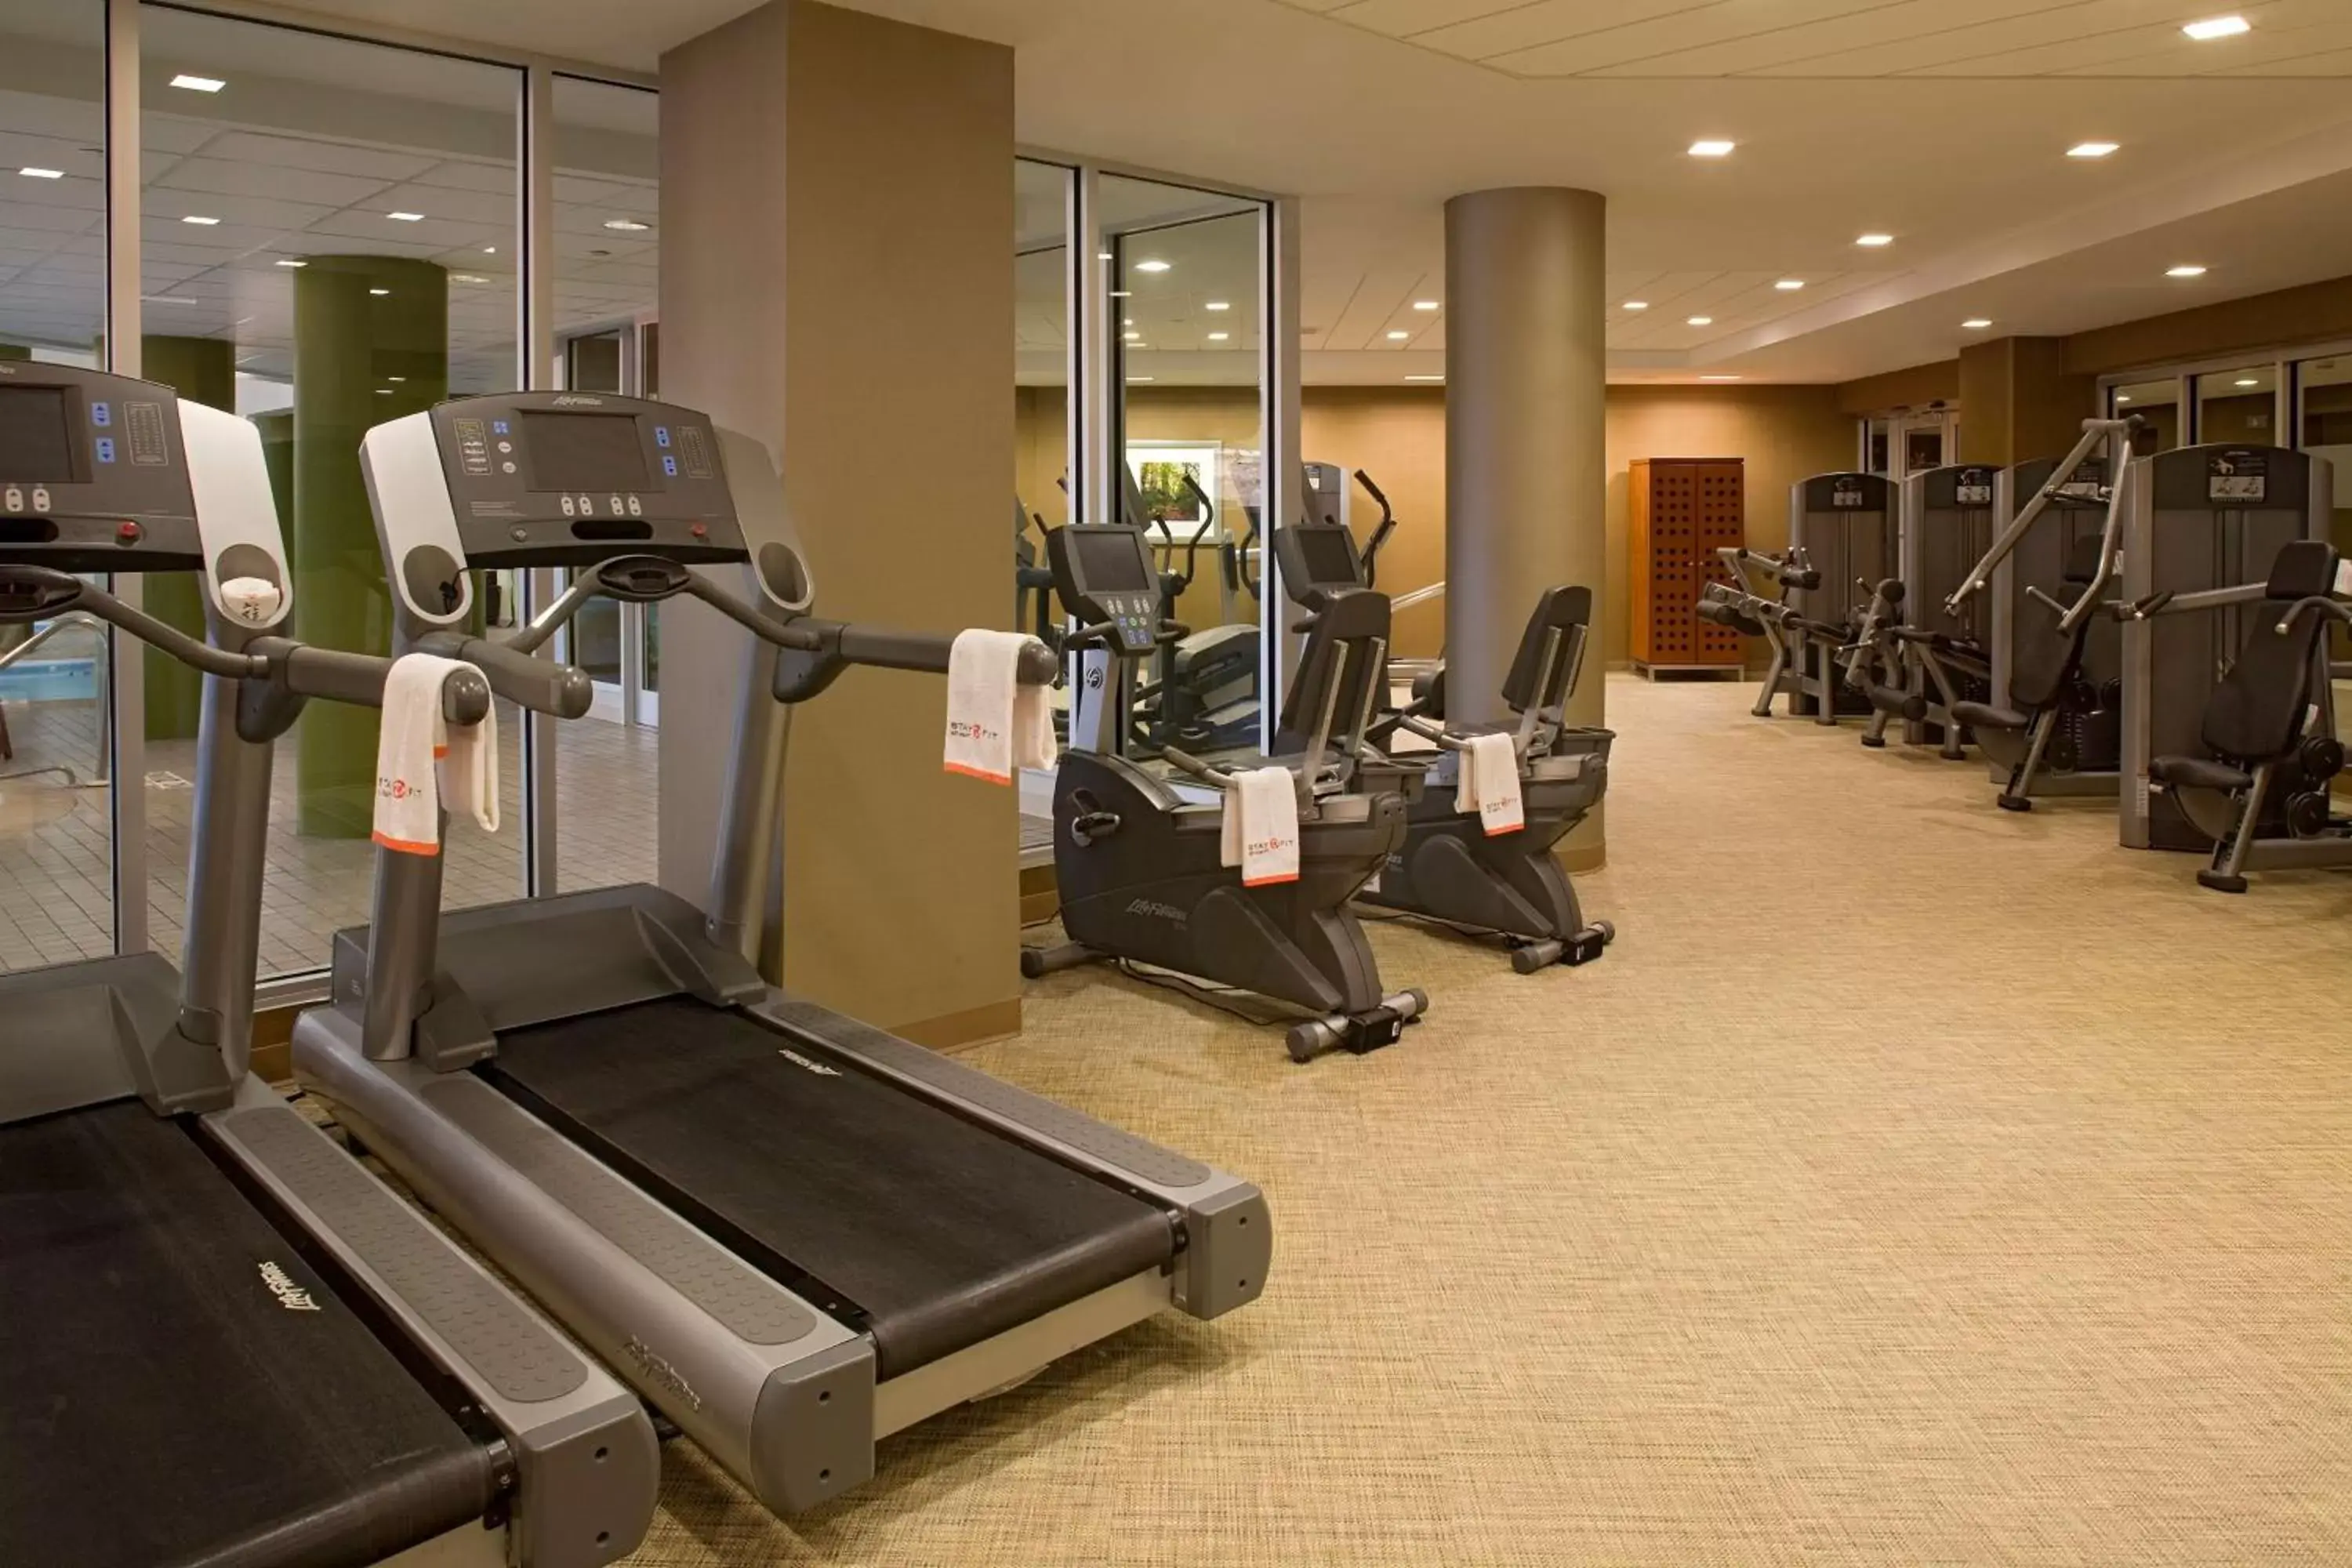 Fitness centre/facilities, Fitness Center/Facilities in Hyatt Regency New Brunswick